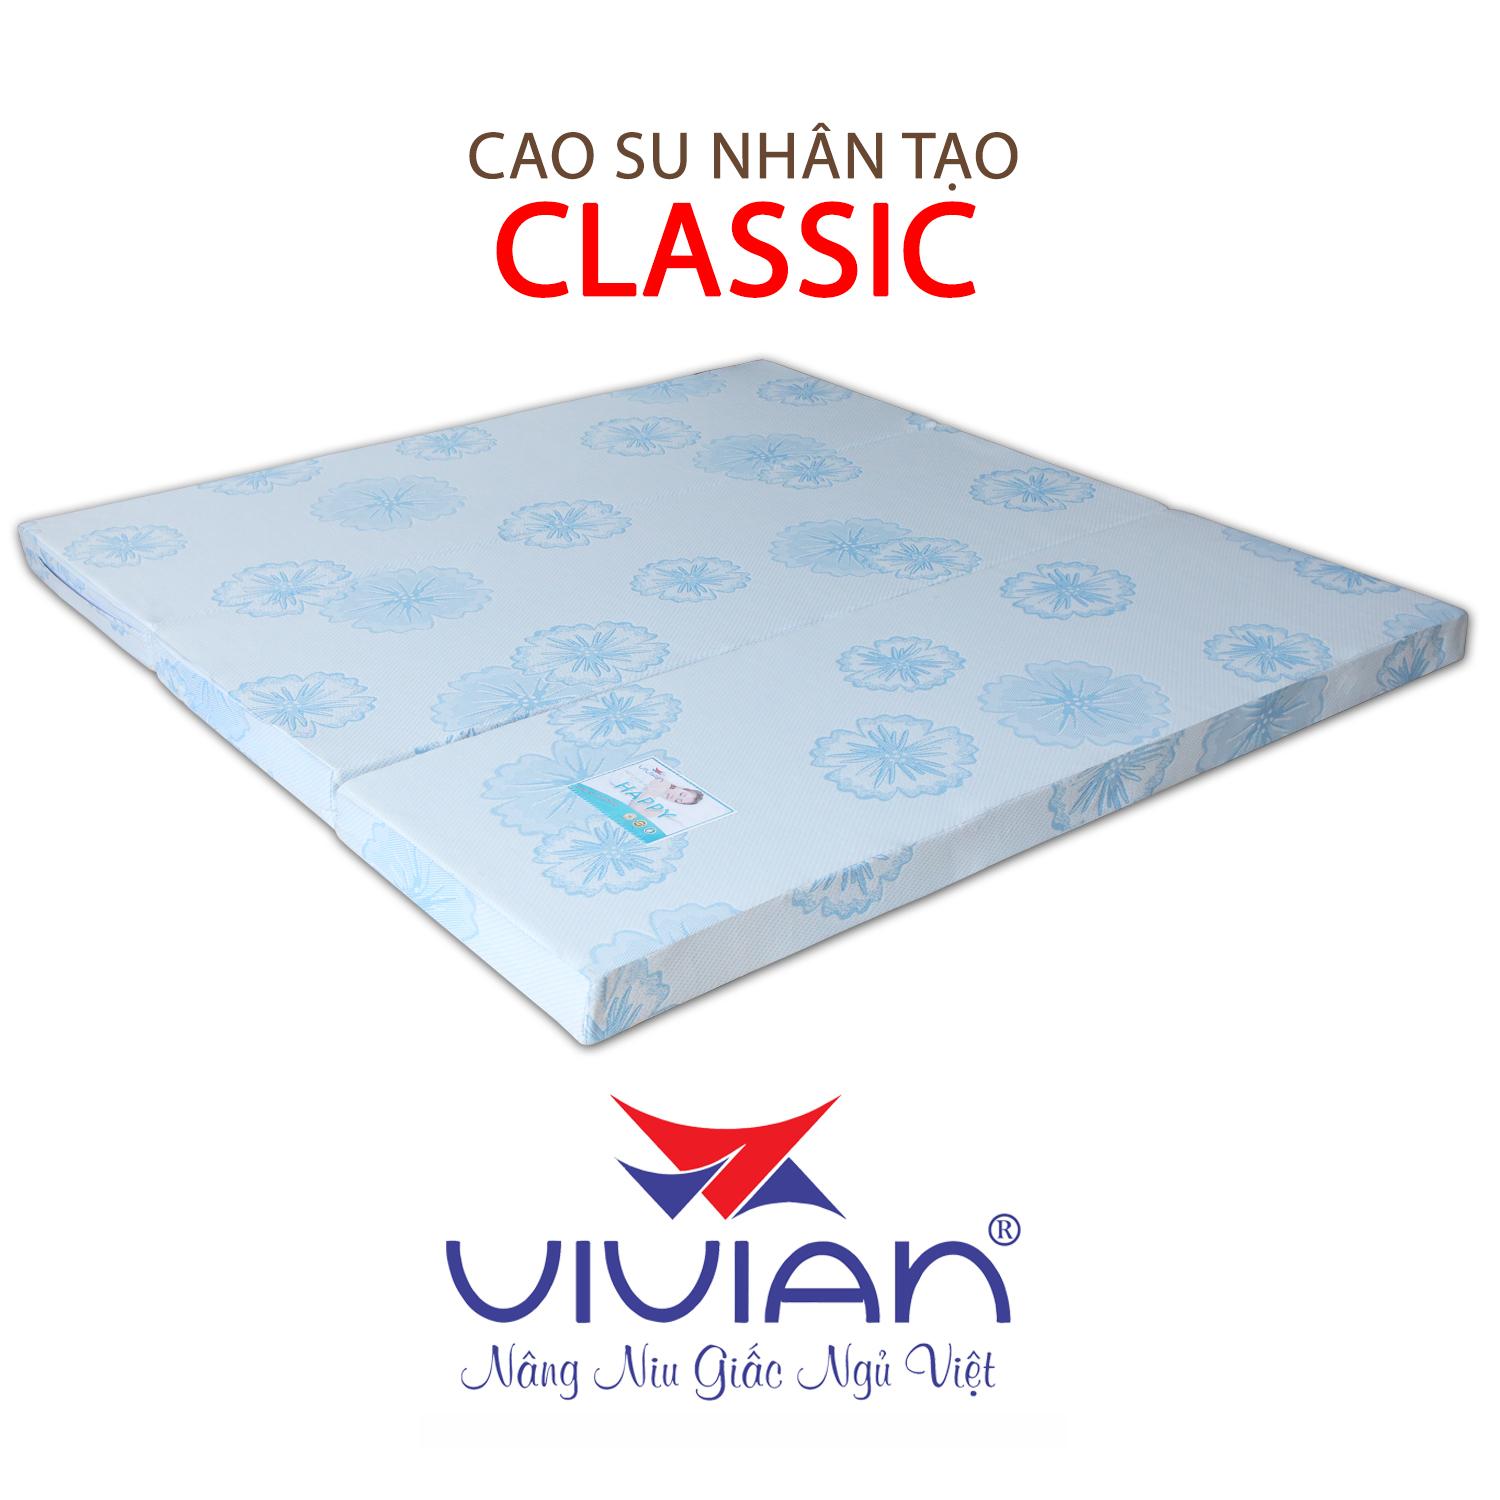 NỆM CAO SU NHÂN TẠO CLASSIC GẤP 3 VIVIAN 100X200X5